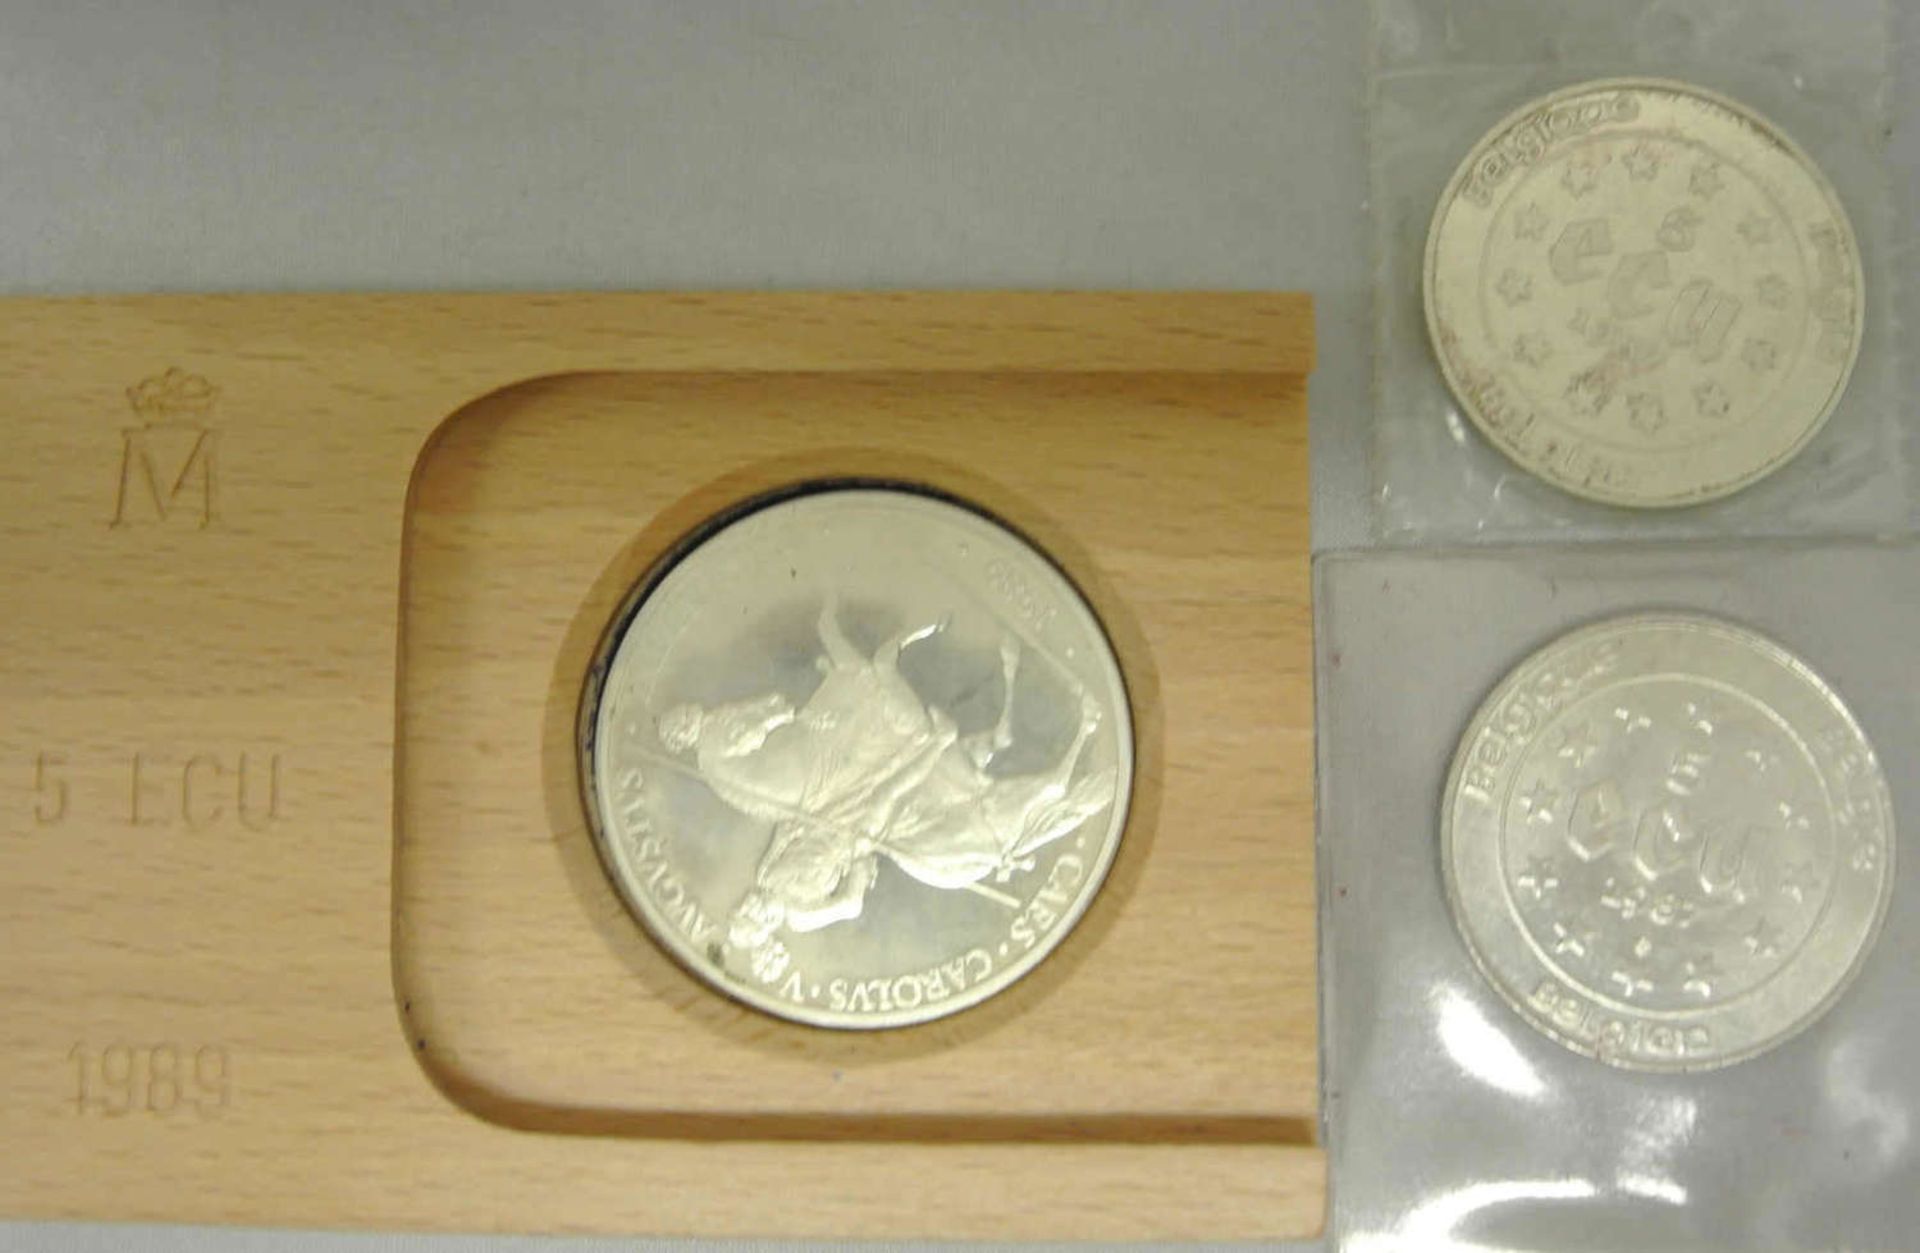 3x 5 Ecu Münzen, 2x Belgien 1987, sowie 1x Spanien 1989 - diese im Original Holzbox